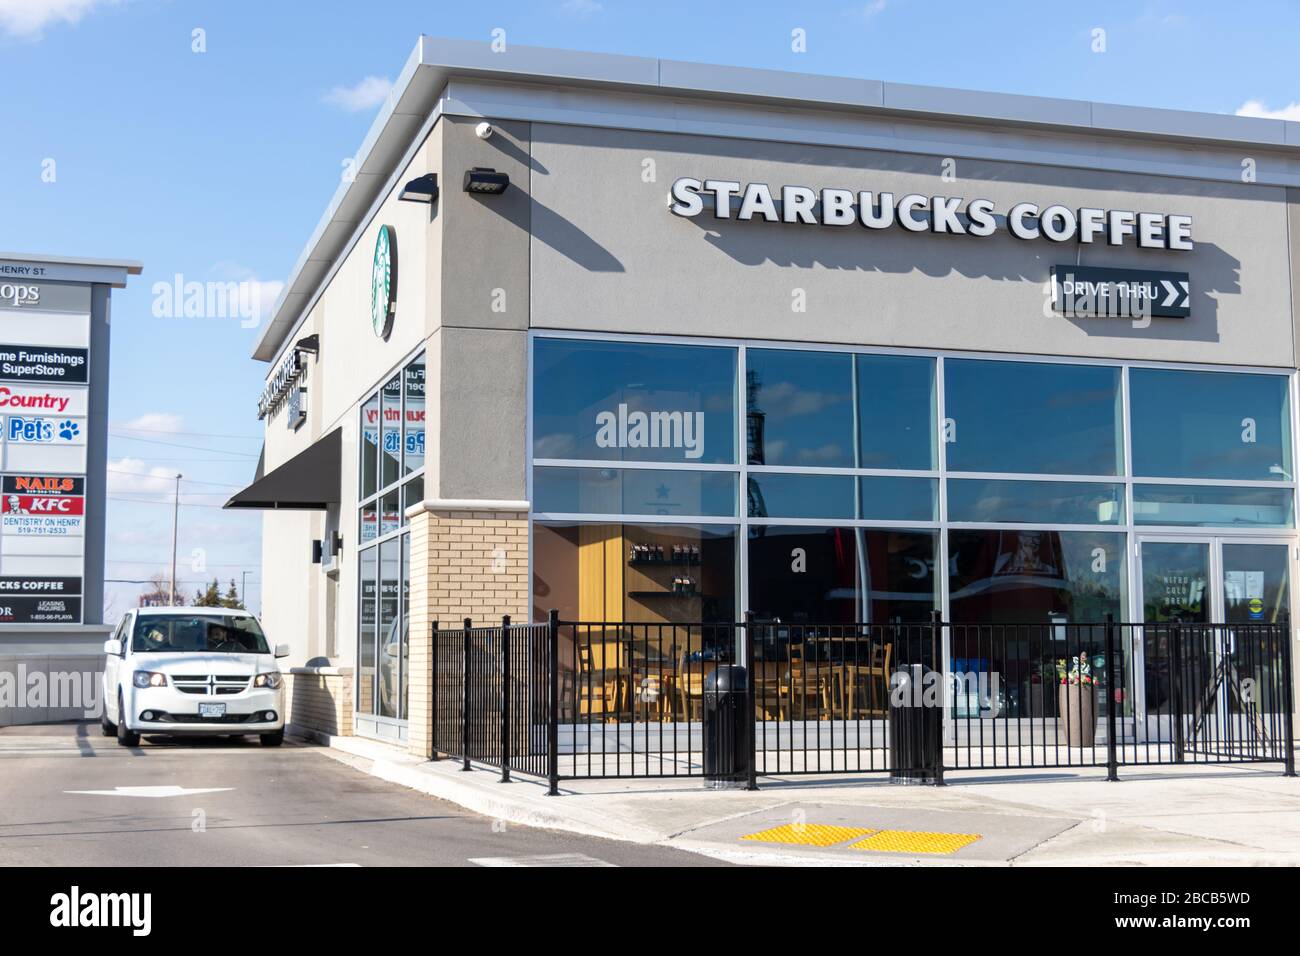 Das Auto wartet am Drive-Thru-Fenster als leeres Starbucks Coffee Café aufgrund der COVID-19-Pandemie, die an einem sonnigen Tag zu sehen ist. Stockfoto